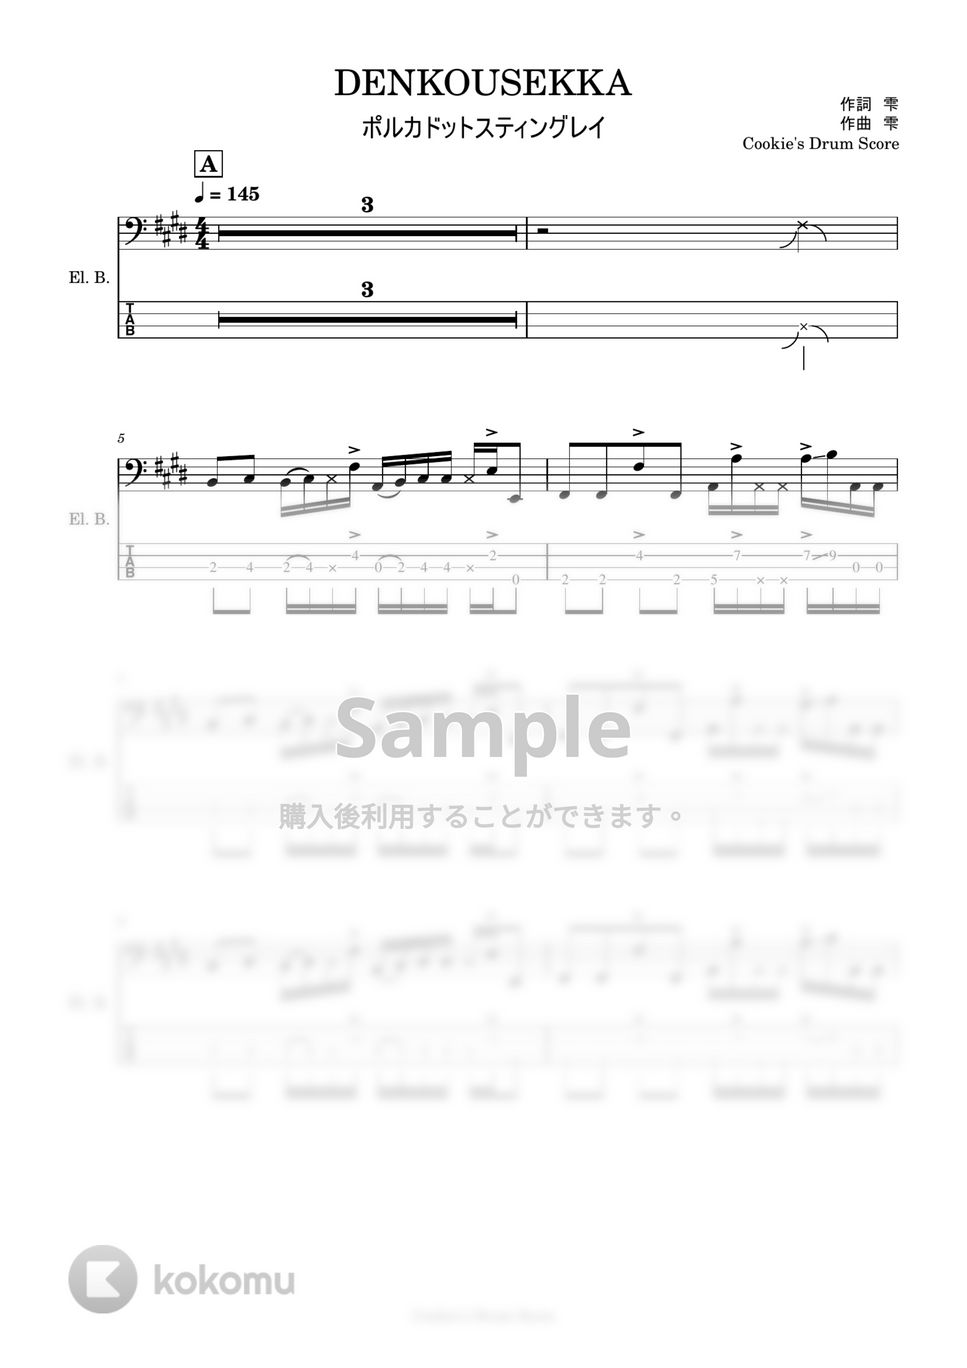 ポルカドットスティングレイ - 【ベース楽譜】 DENKOUSEKKA / ポルカドットスティングレイ - DENKOUSEKKA / Polkadot Stingray 【BassScore】 by Cookie's Drum Score